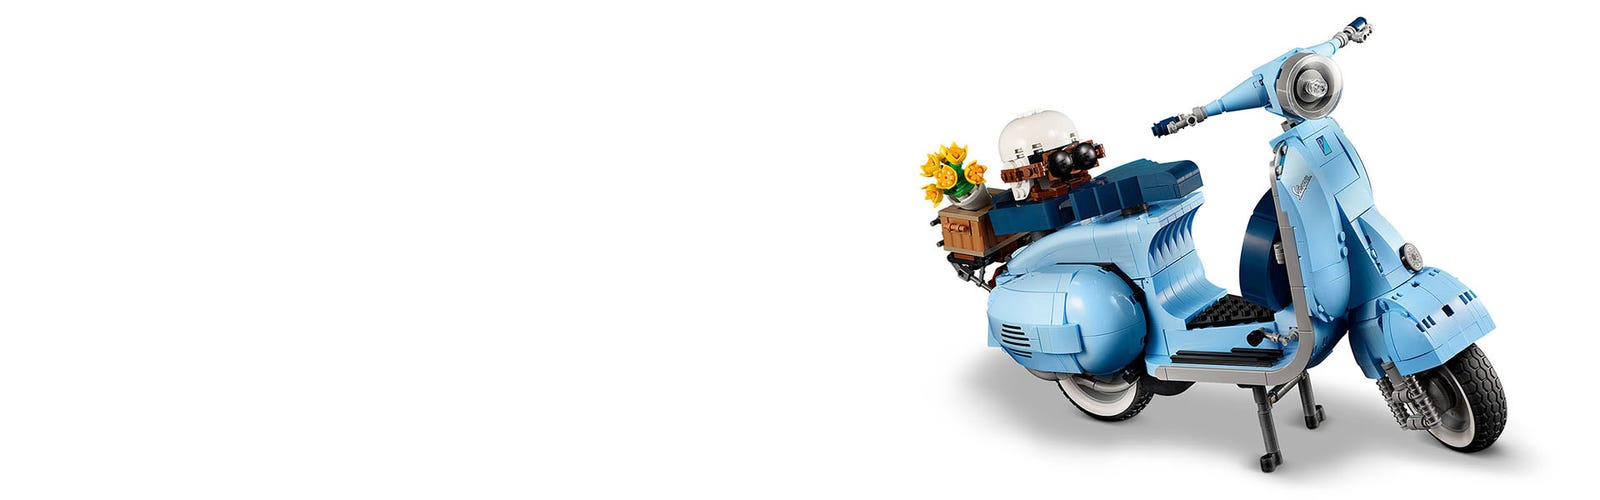 Buy LEGO® Vespa 125 online for89,99€